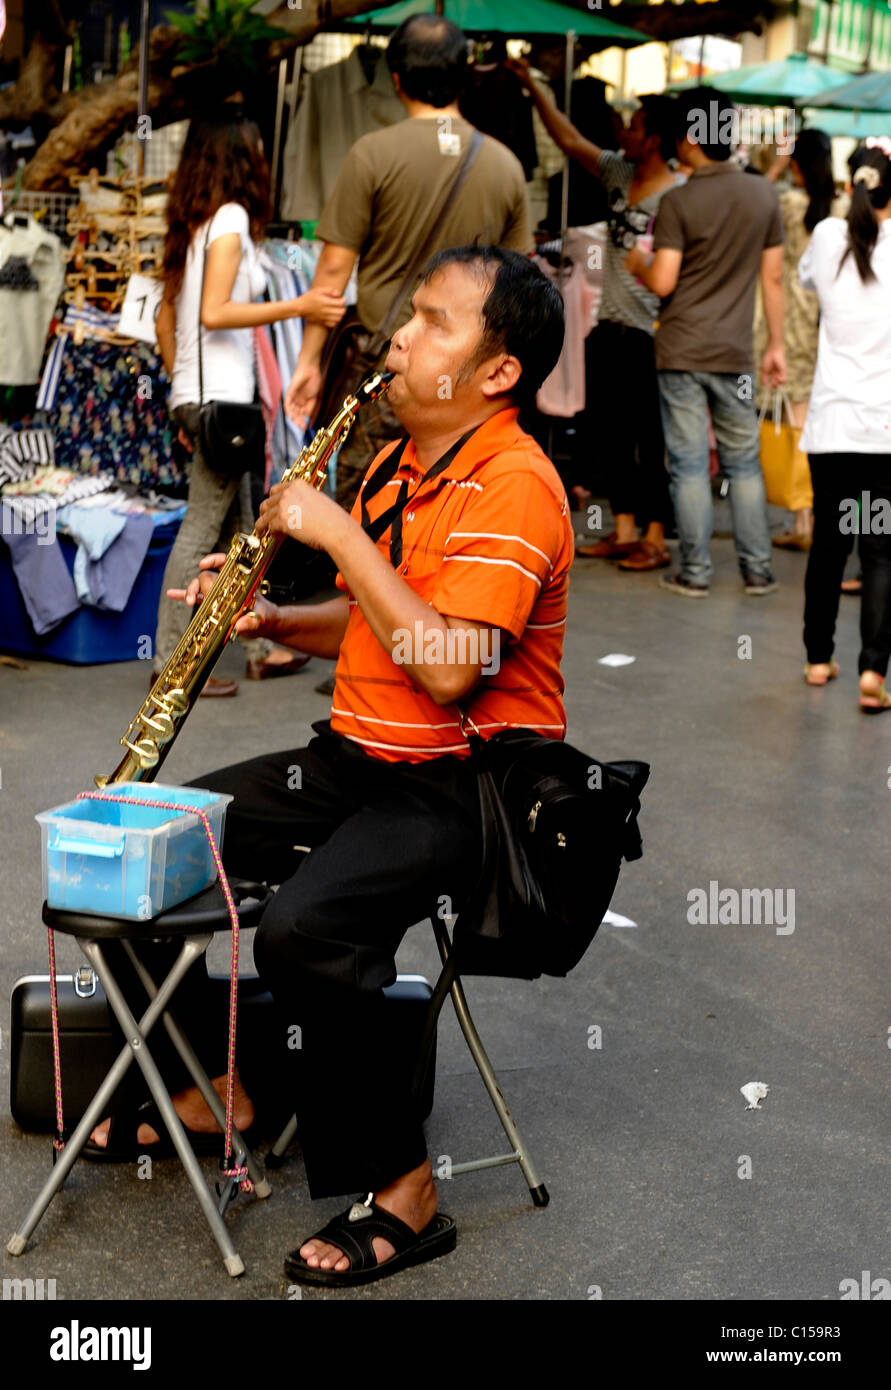 Musicien aveugle jouant de la clarinette, Chinatown, Bangkok, Thaïlande Banque D'Images